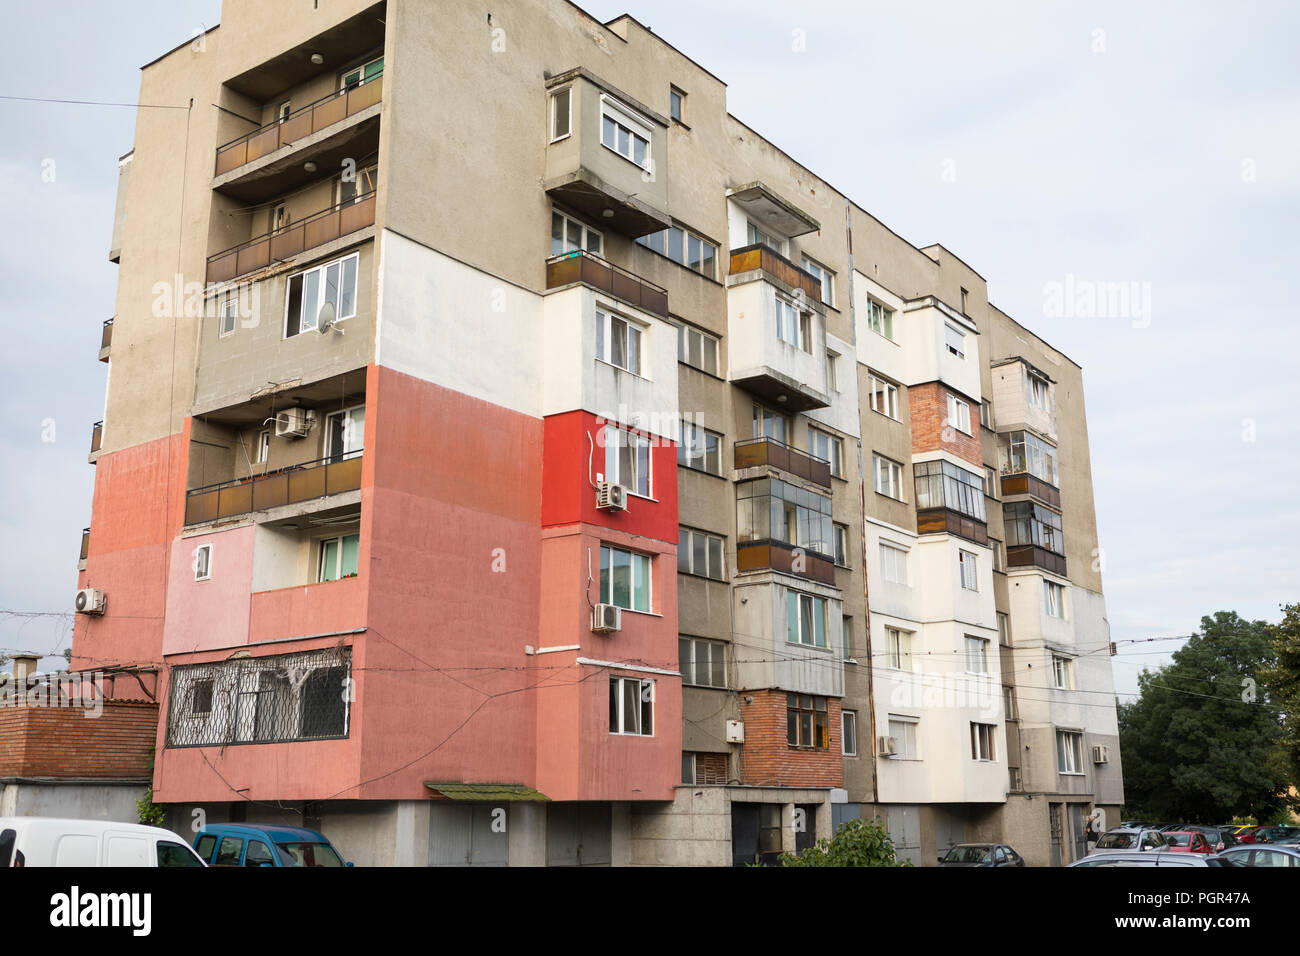 De vieux immeubles à appartements quartier pauvre de la capitale Sofia, Bulgarie Banque D'Images